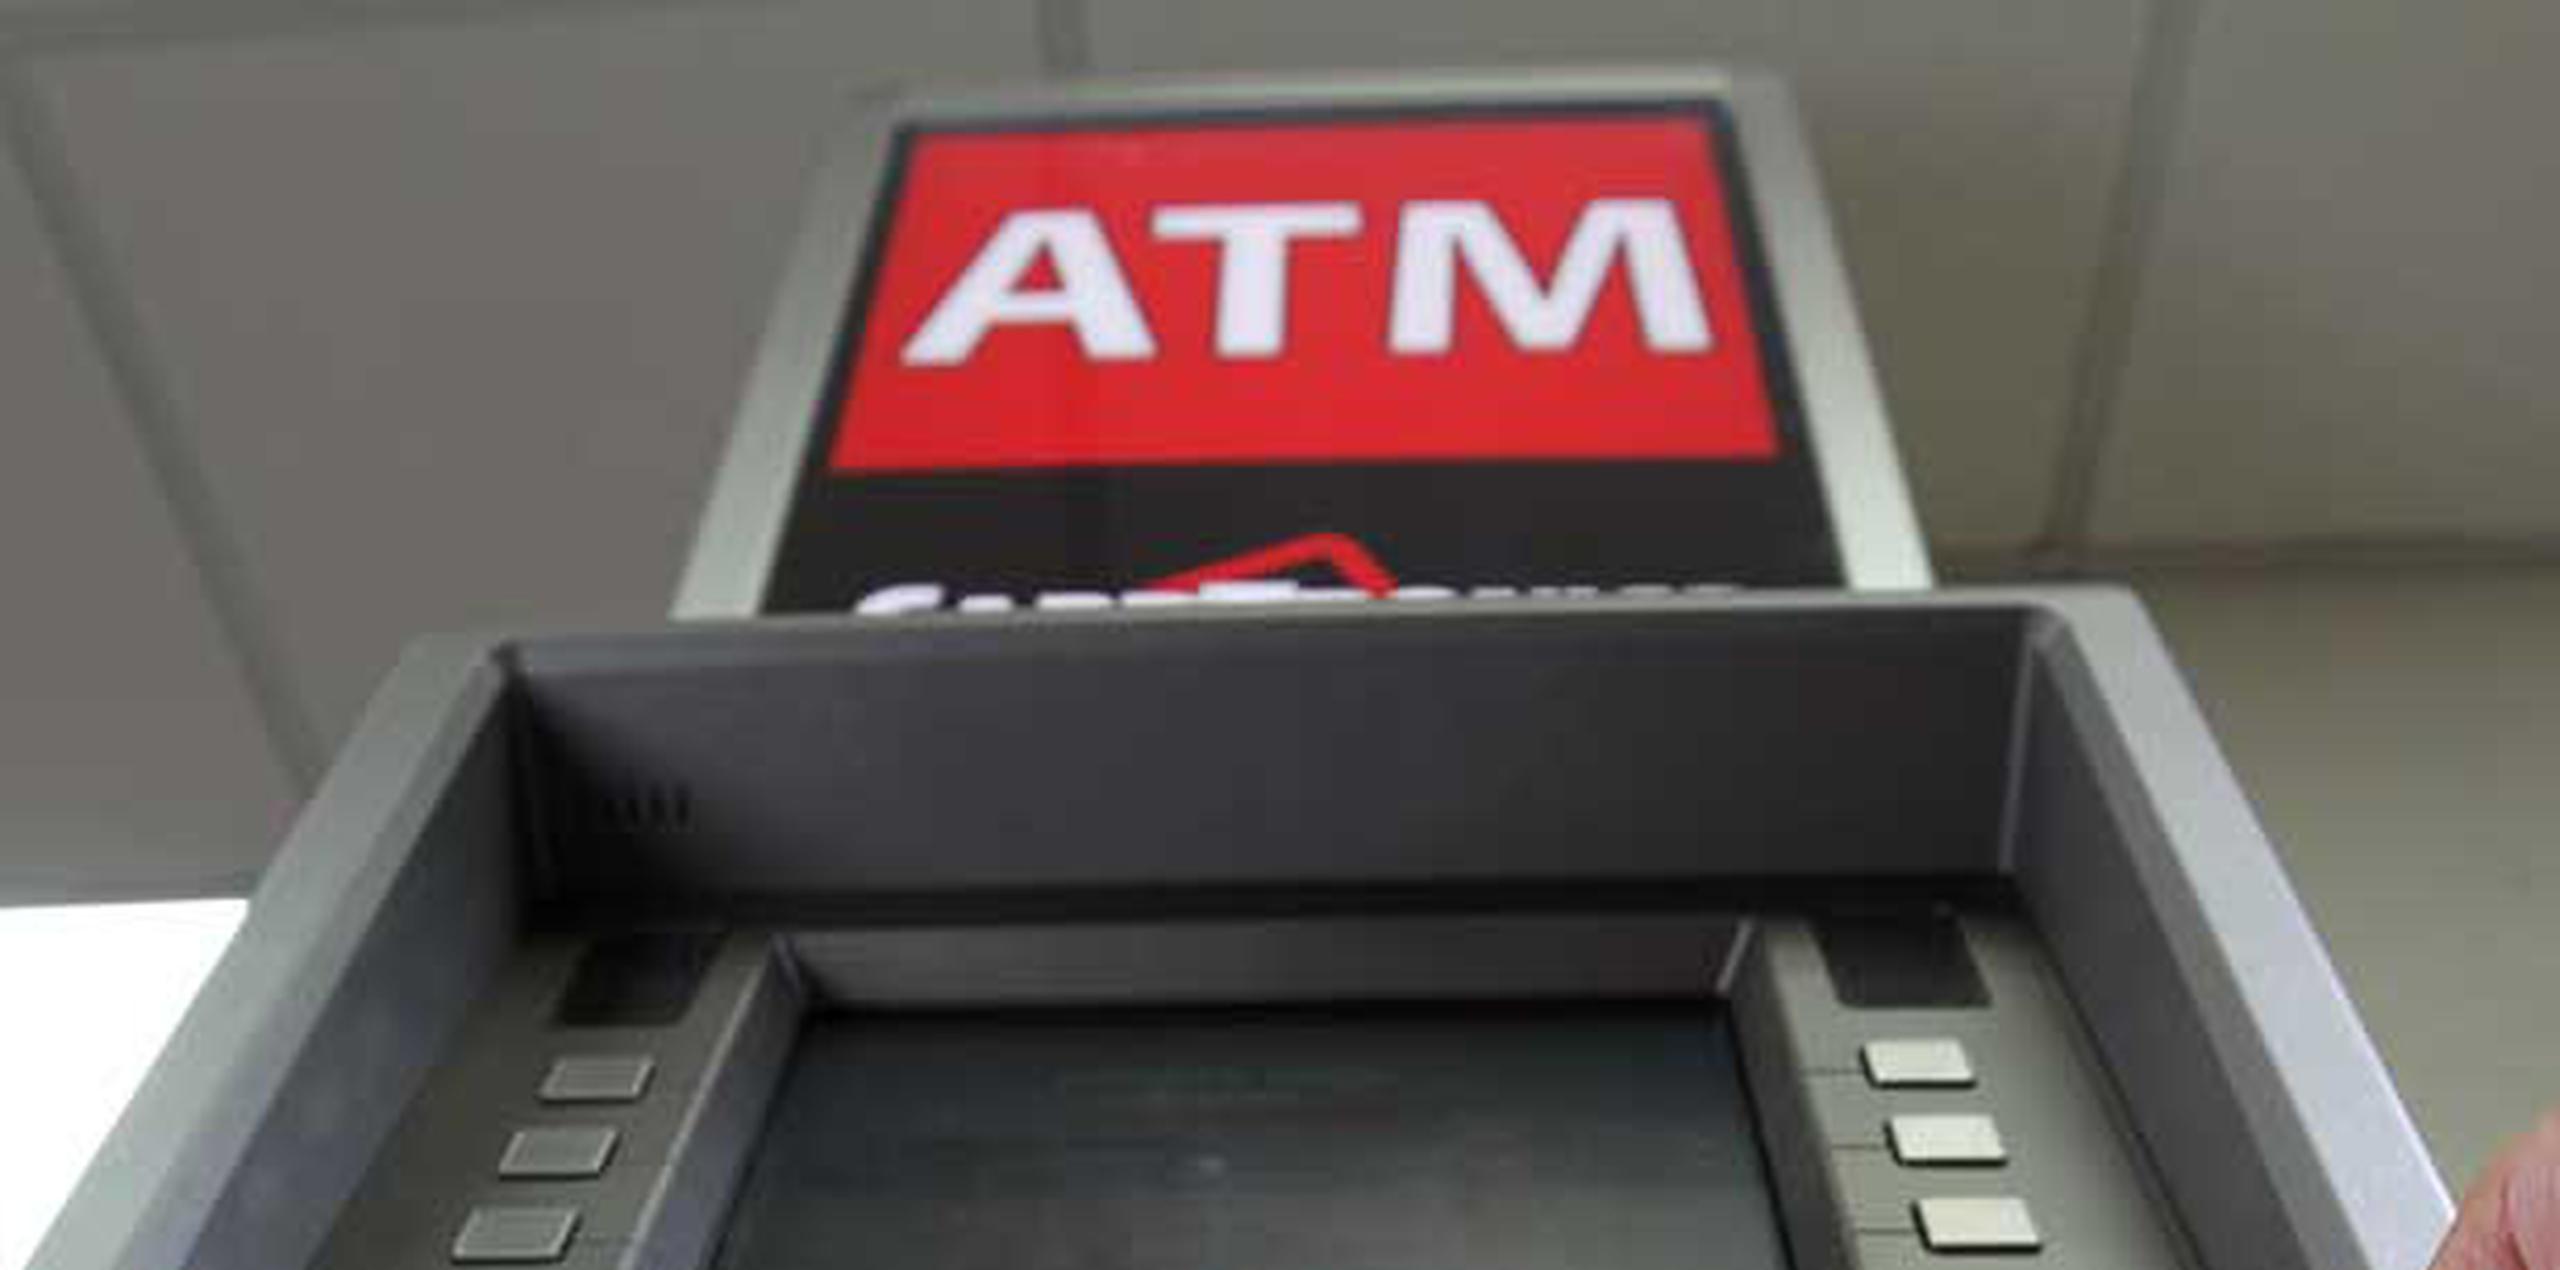 La Policía indicó que aún se desconoce cuánto dinero tenía la máquina de ATM ubicada en el centro comercial. (Archivo)